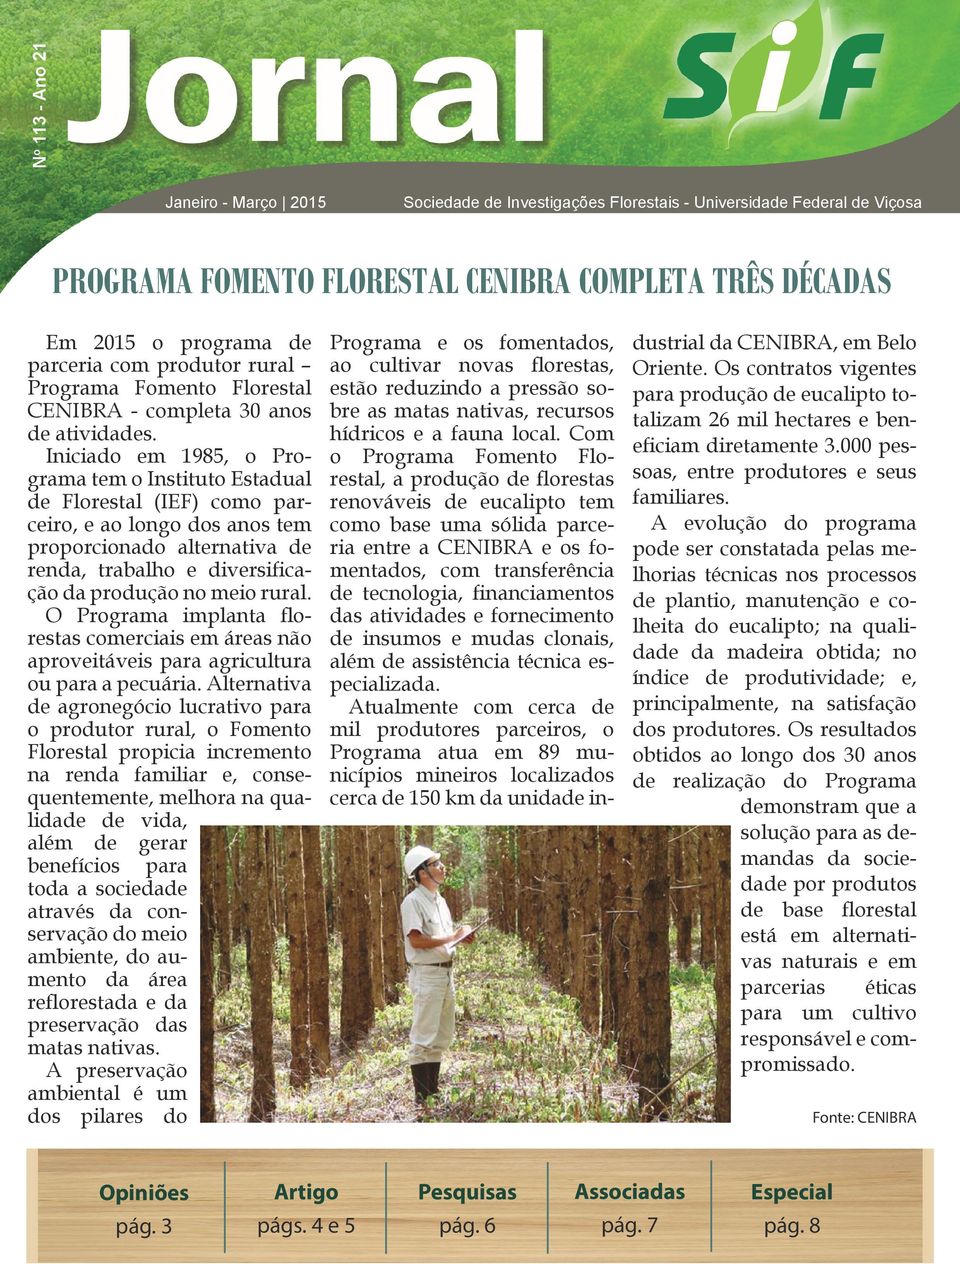 Iniciado em 1985, o Programa tem o Instituto Estadual de Florestal (IEF) como parceiro, e ao longo dos anos tem proporcionado alternativa de renda, trabalho e diversificação da produção no meio rural.